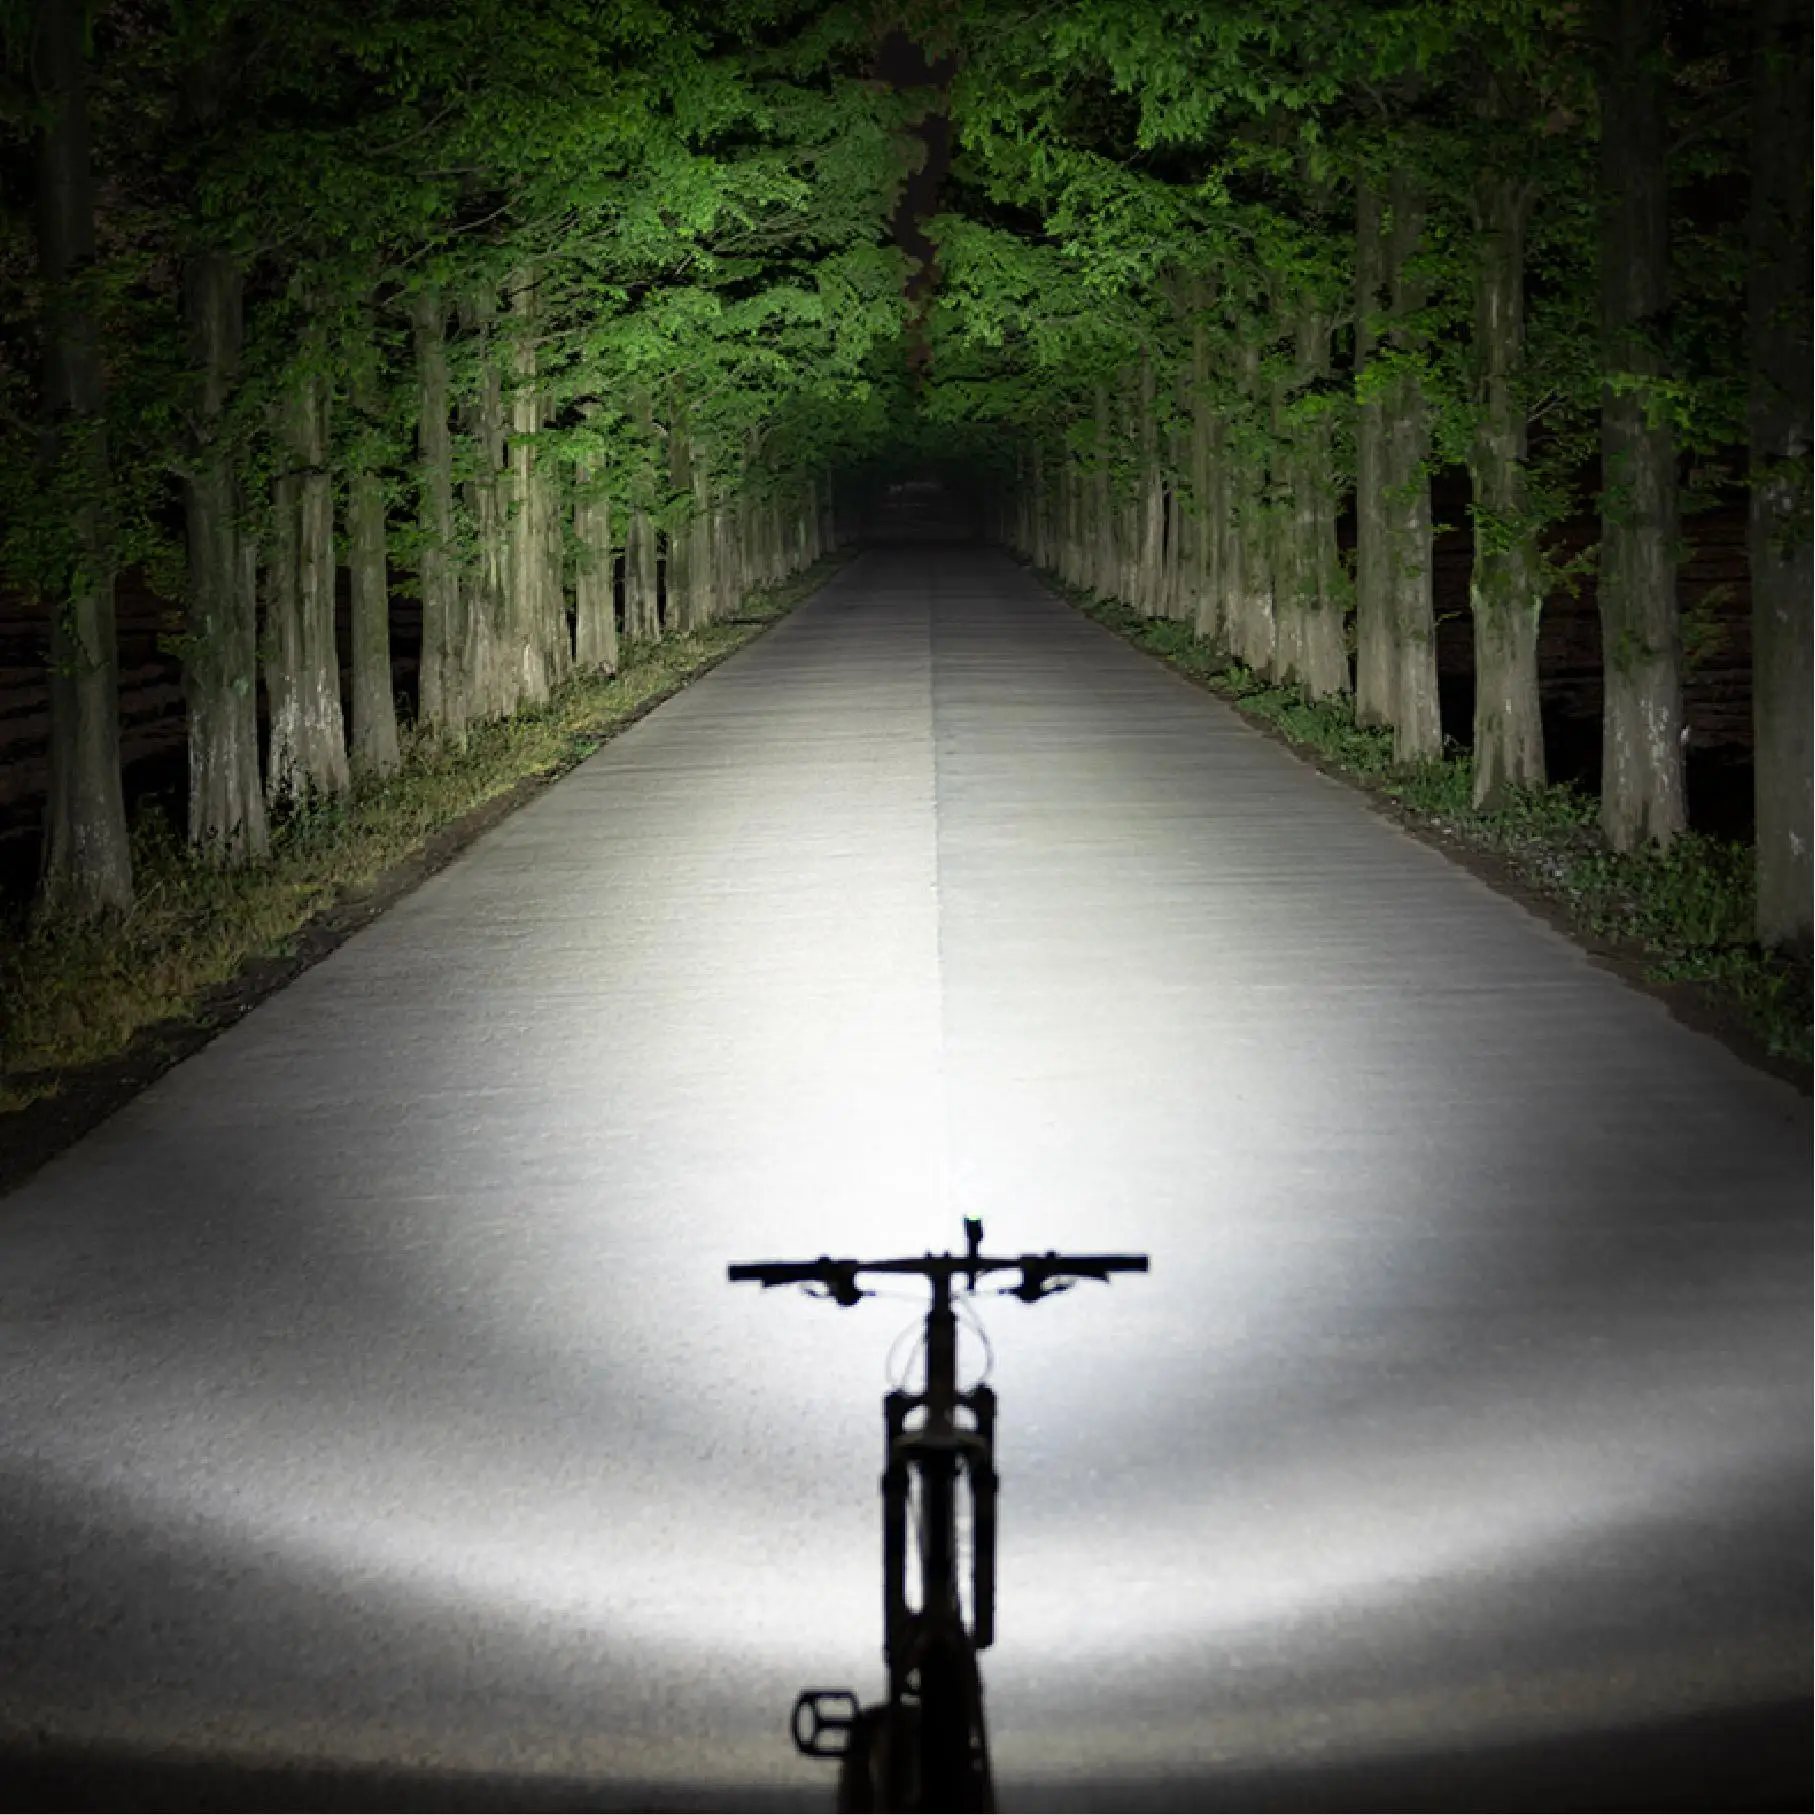 
Professional High Power Bike Front Light Led Light For Biking 